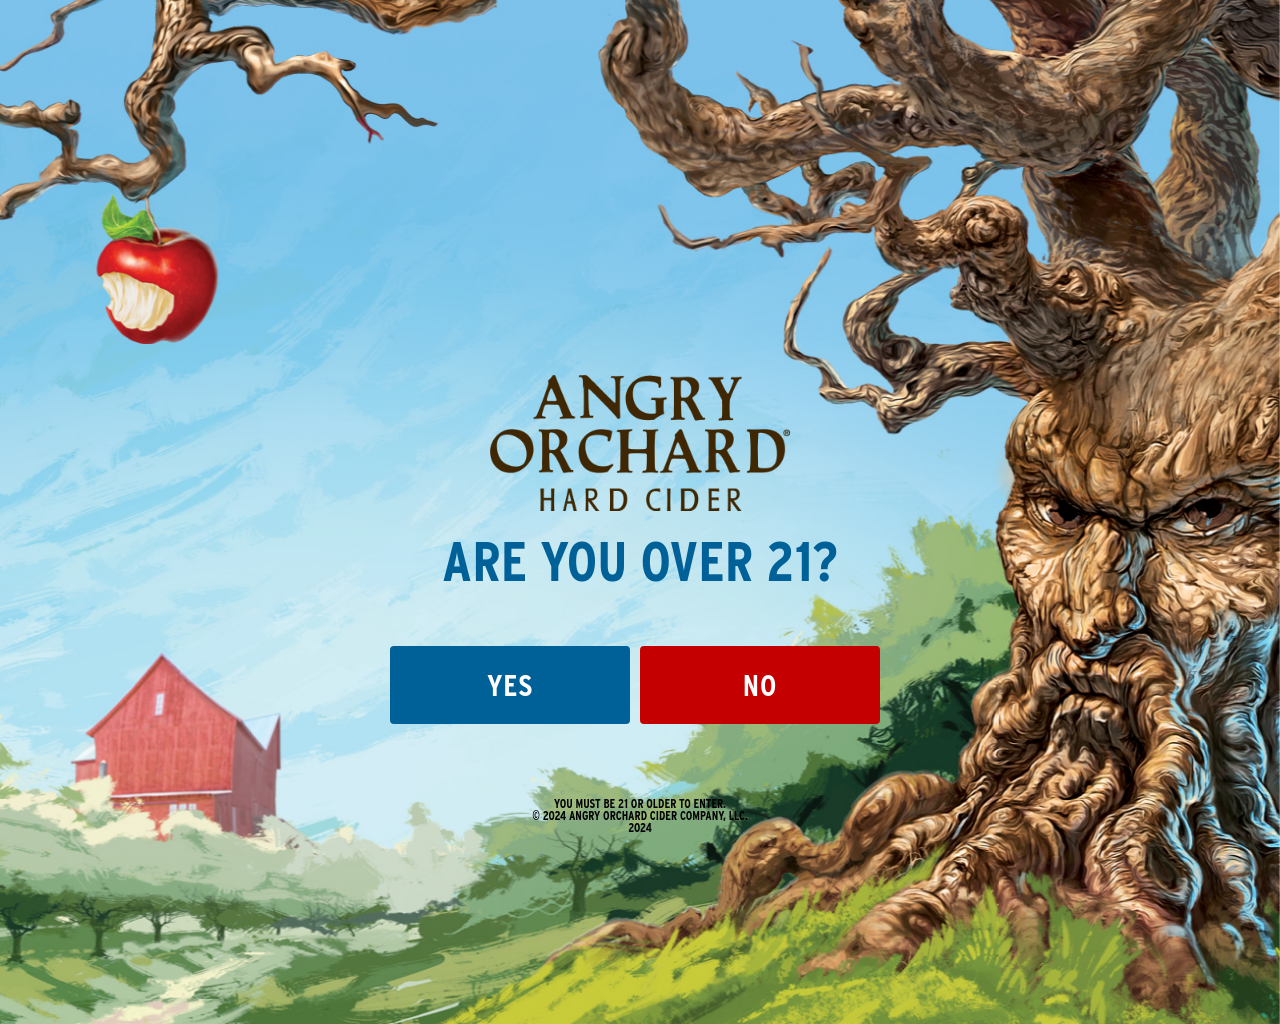 angryorchard.com